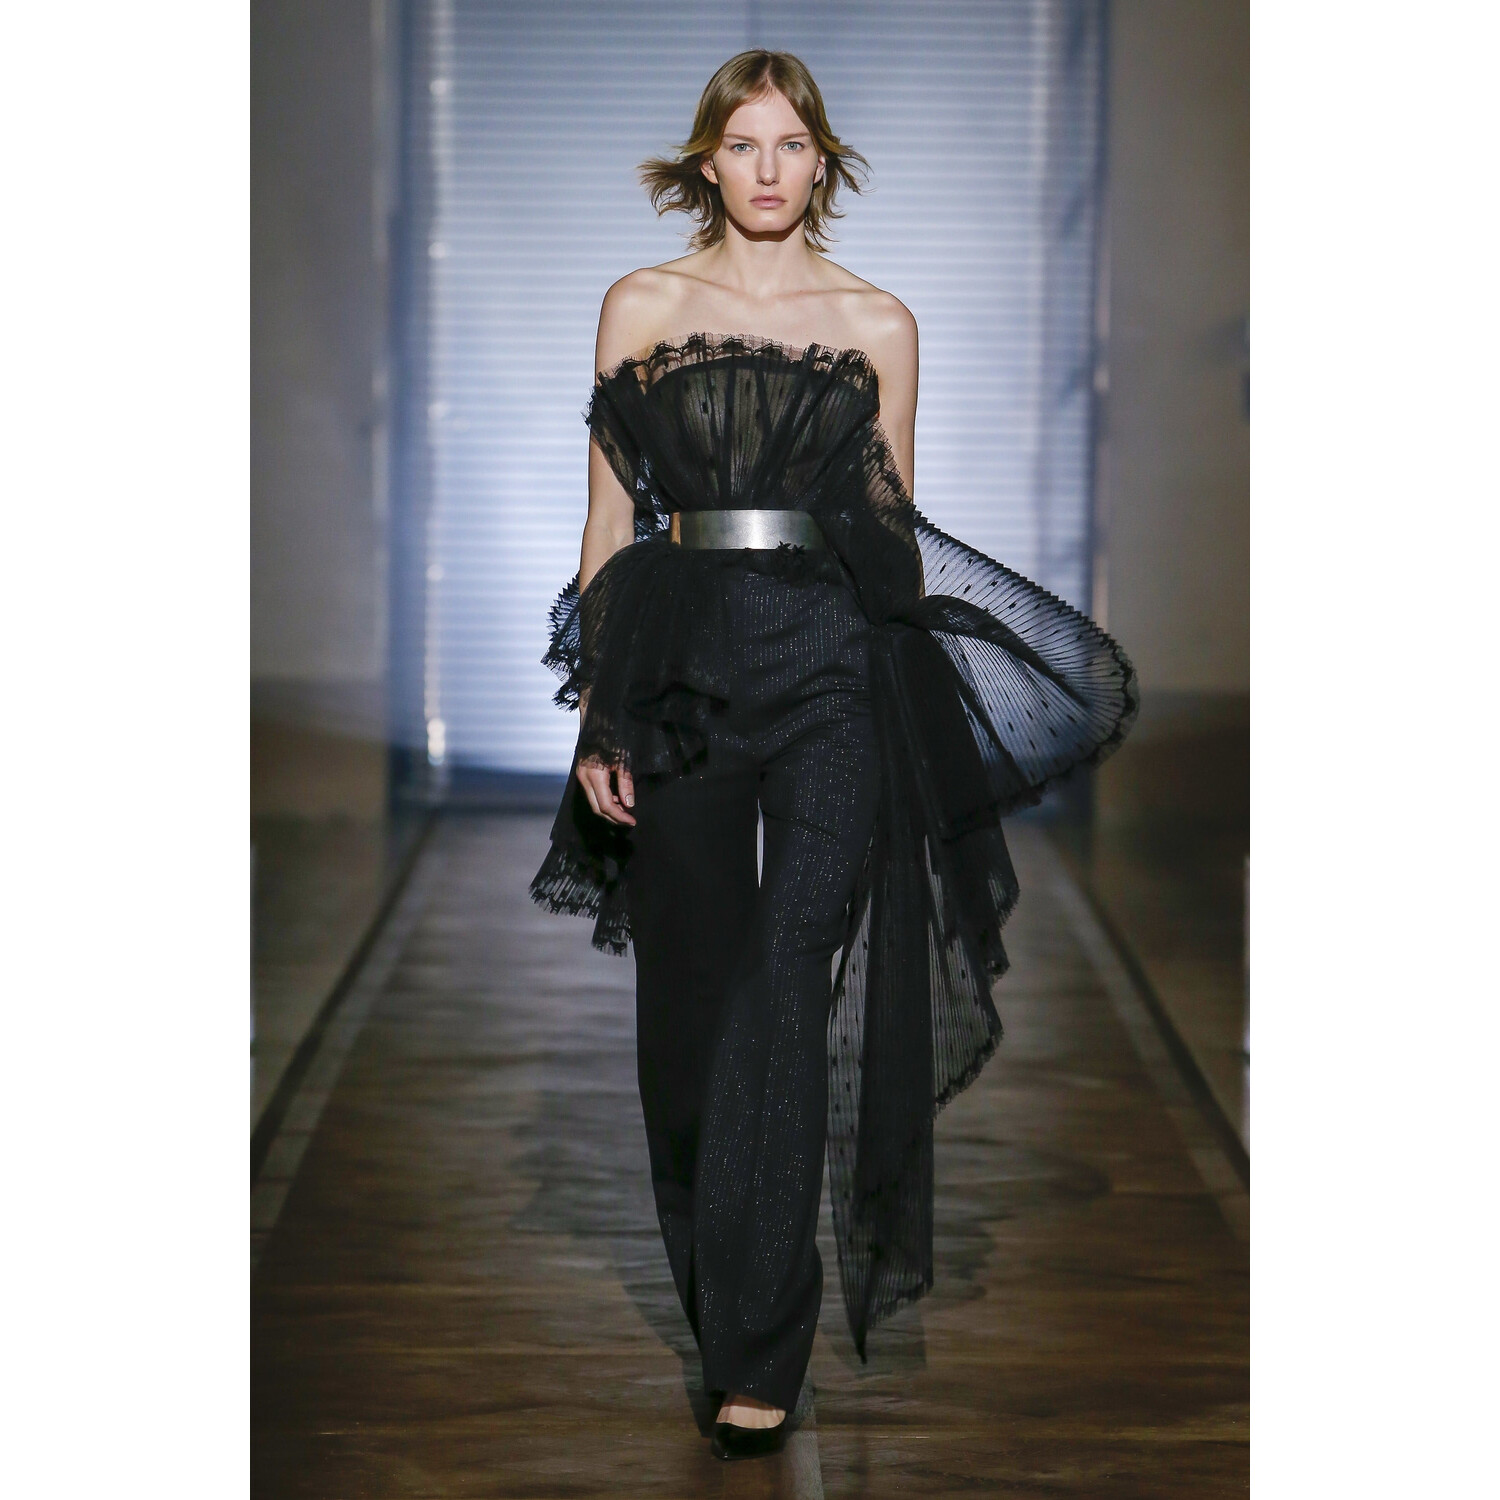 Фото Givenchy Spring 2018 Couture Paris PFW коллекция 2018 Живанши кутюр лето 2018 неделя высокой моды в Париже Mainstyles